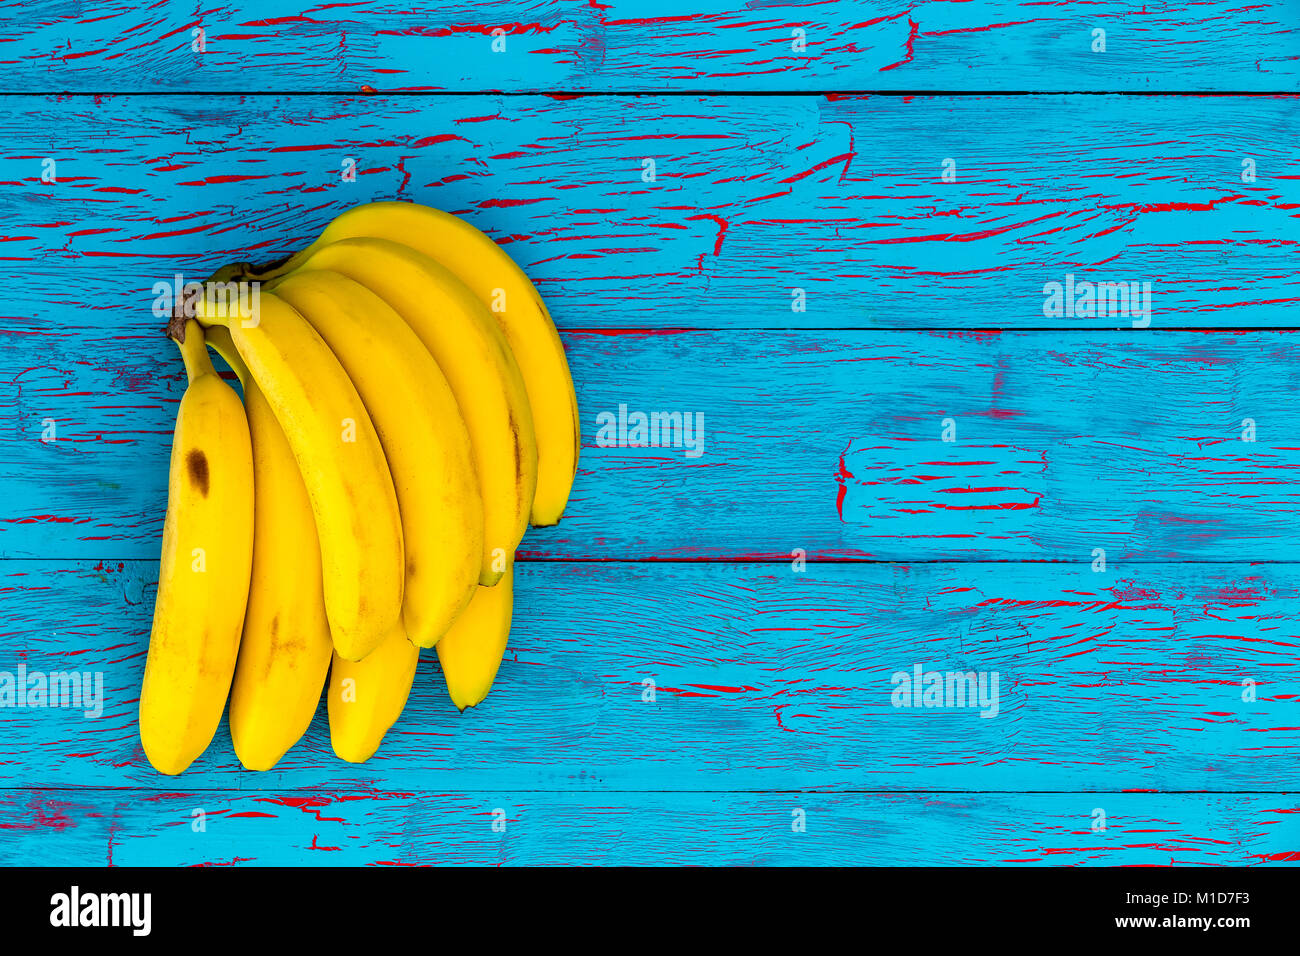 Bande de bananes jaunes mûrs sains sur une peinture crackle exotiques bois bleu turquoise background with copy space Banque D'Images